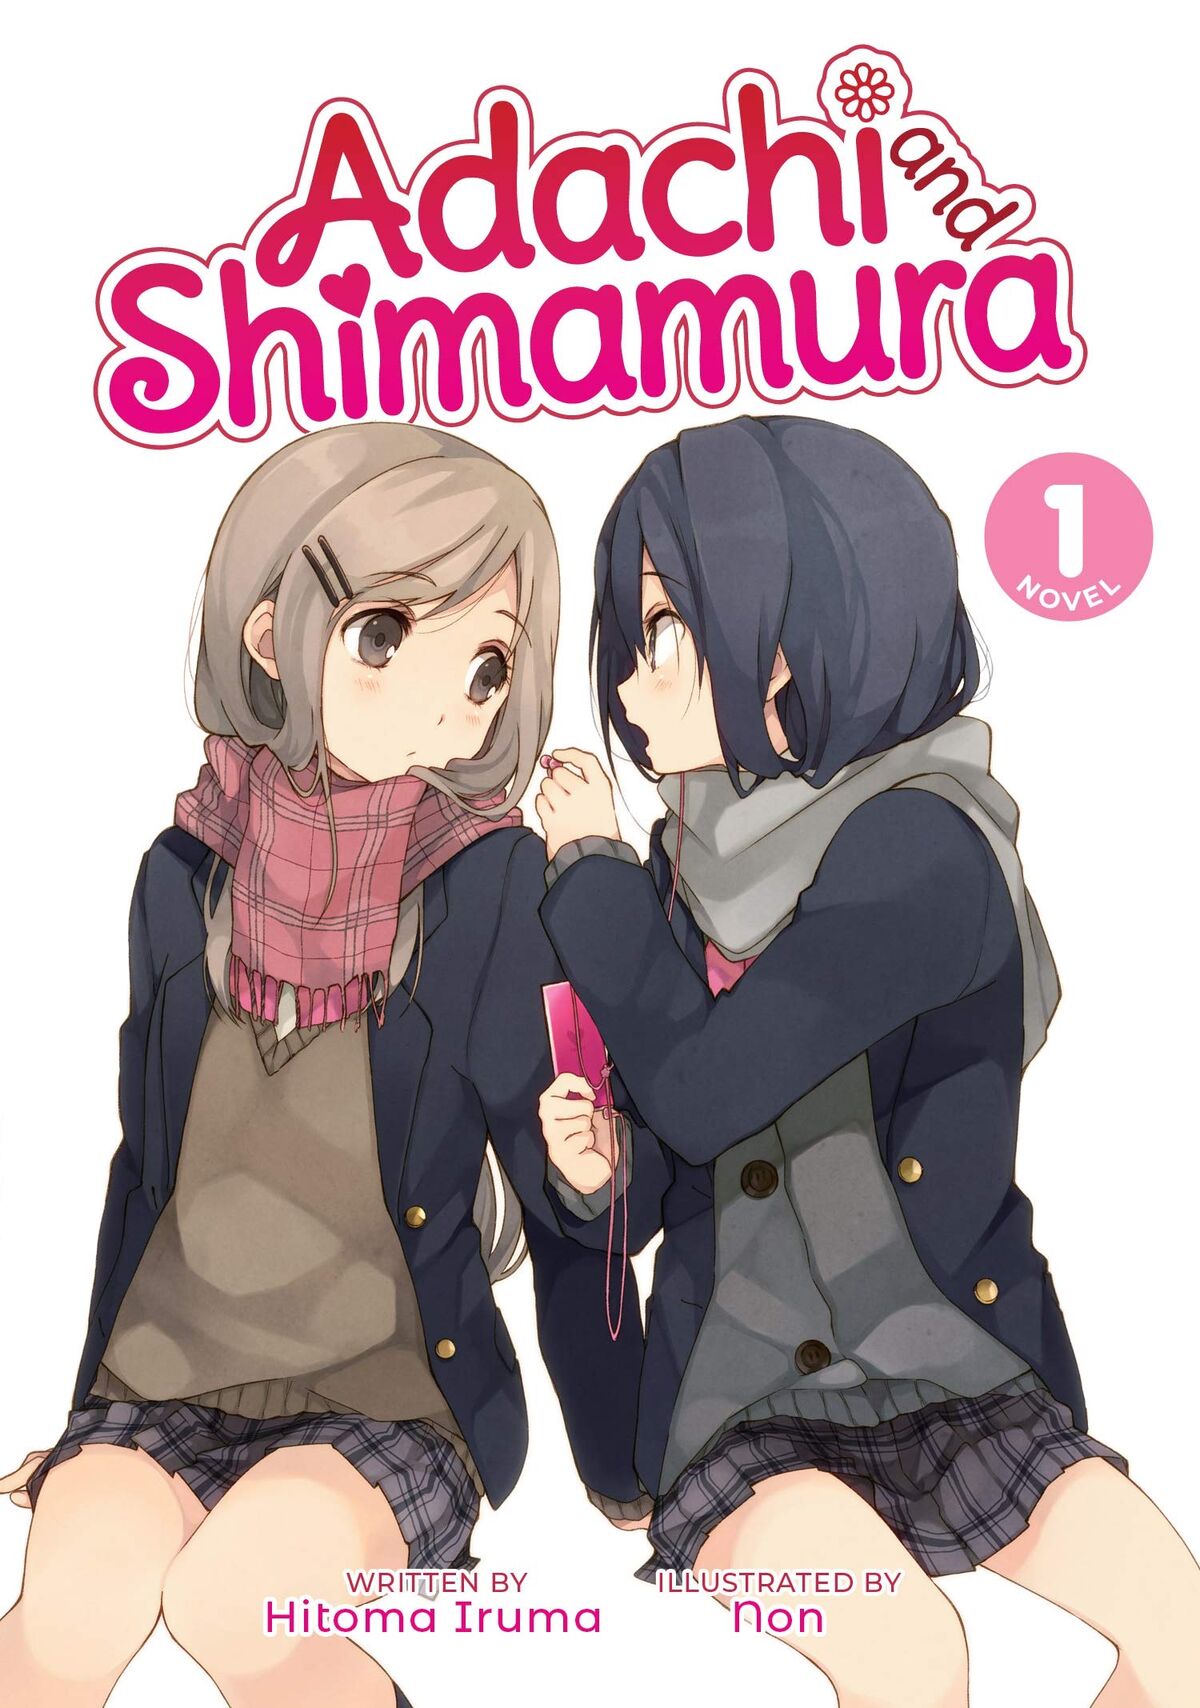 Nakatani-sensei's art of Adachi and Shimamura in their first manga volume :  r/AdachiToShimamura